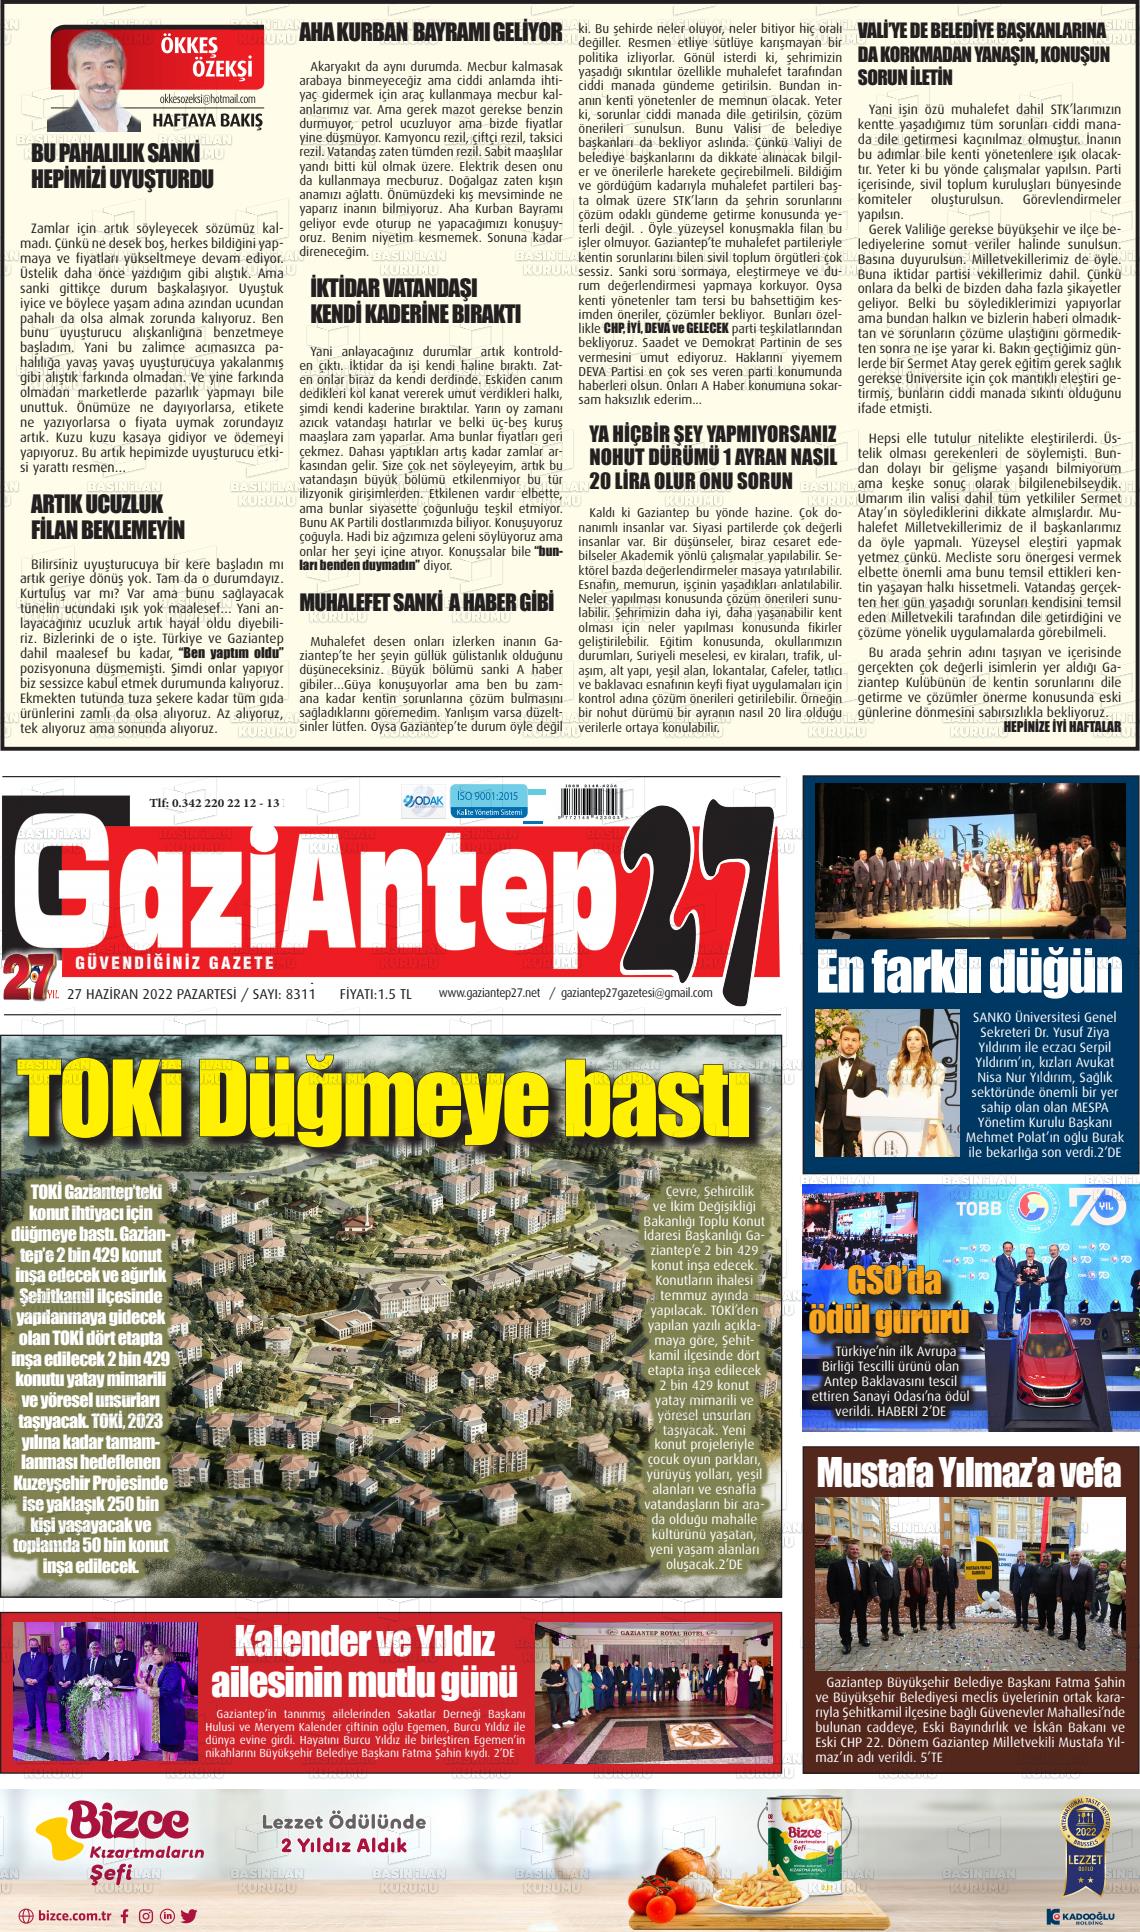 Haziran Tarihli Gaziantep Gazete Man Etleri